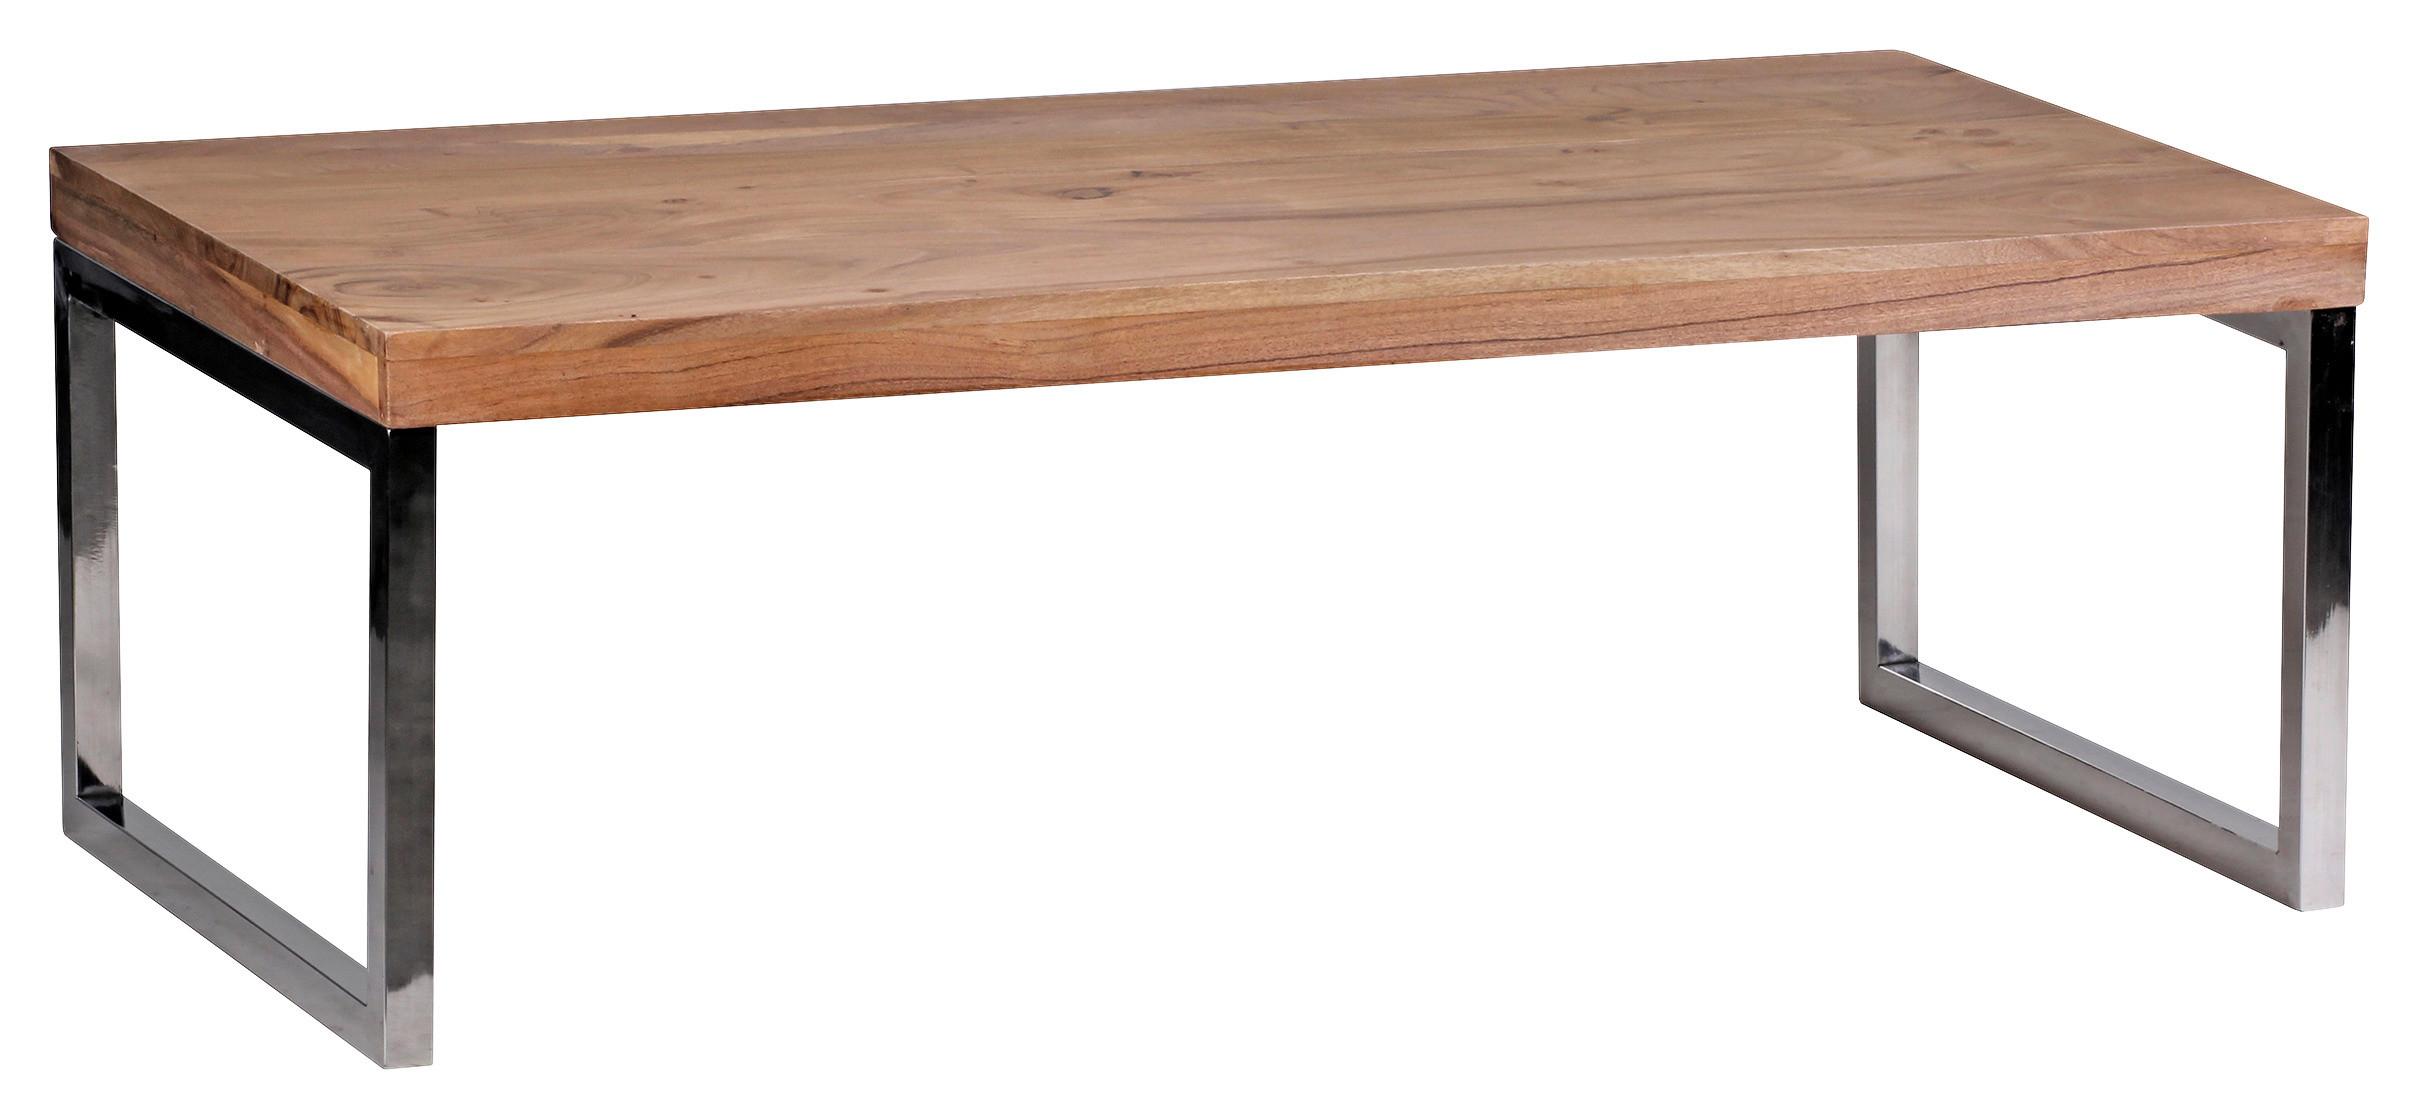 Couchtisch "Guna" ca. 120x60 cm, aus Akazie - Chromfarben/Akaziefarben, Design, Holz/Metall (120/60/40cm) - MID.YOU